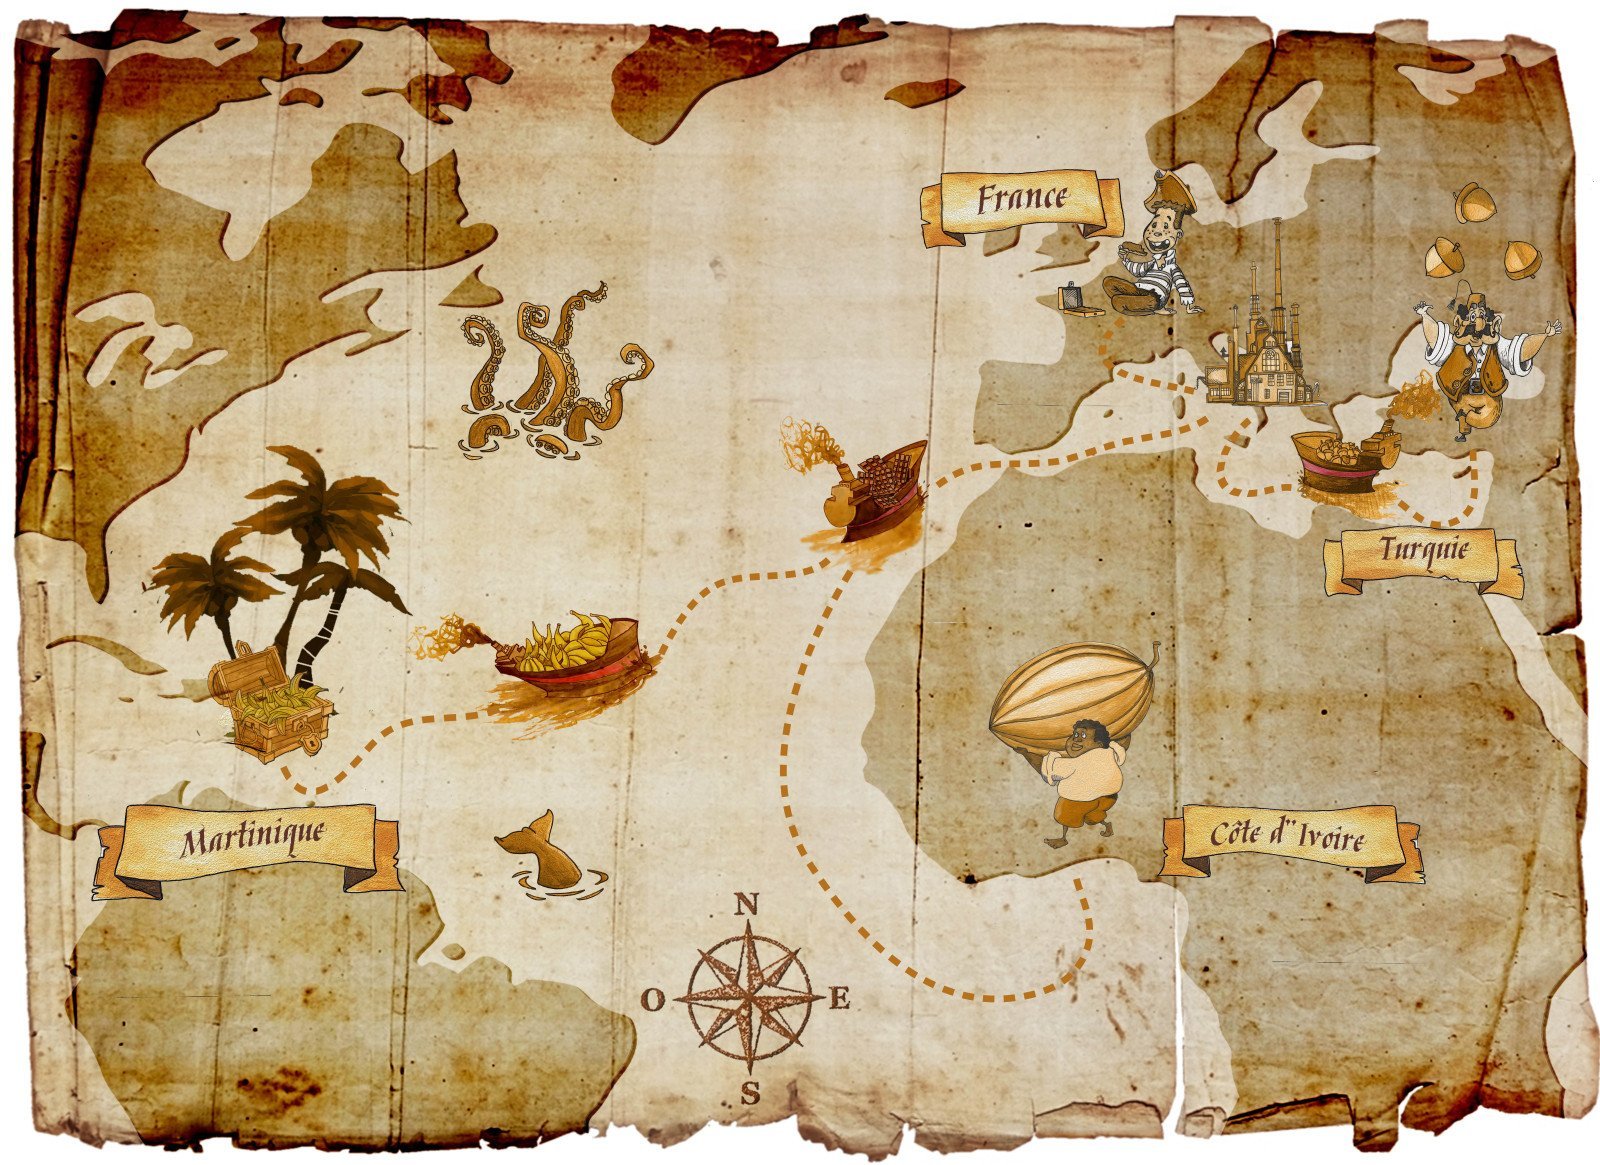 Пиратская карта png